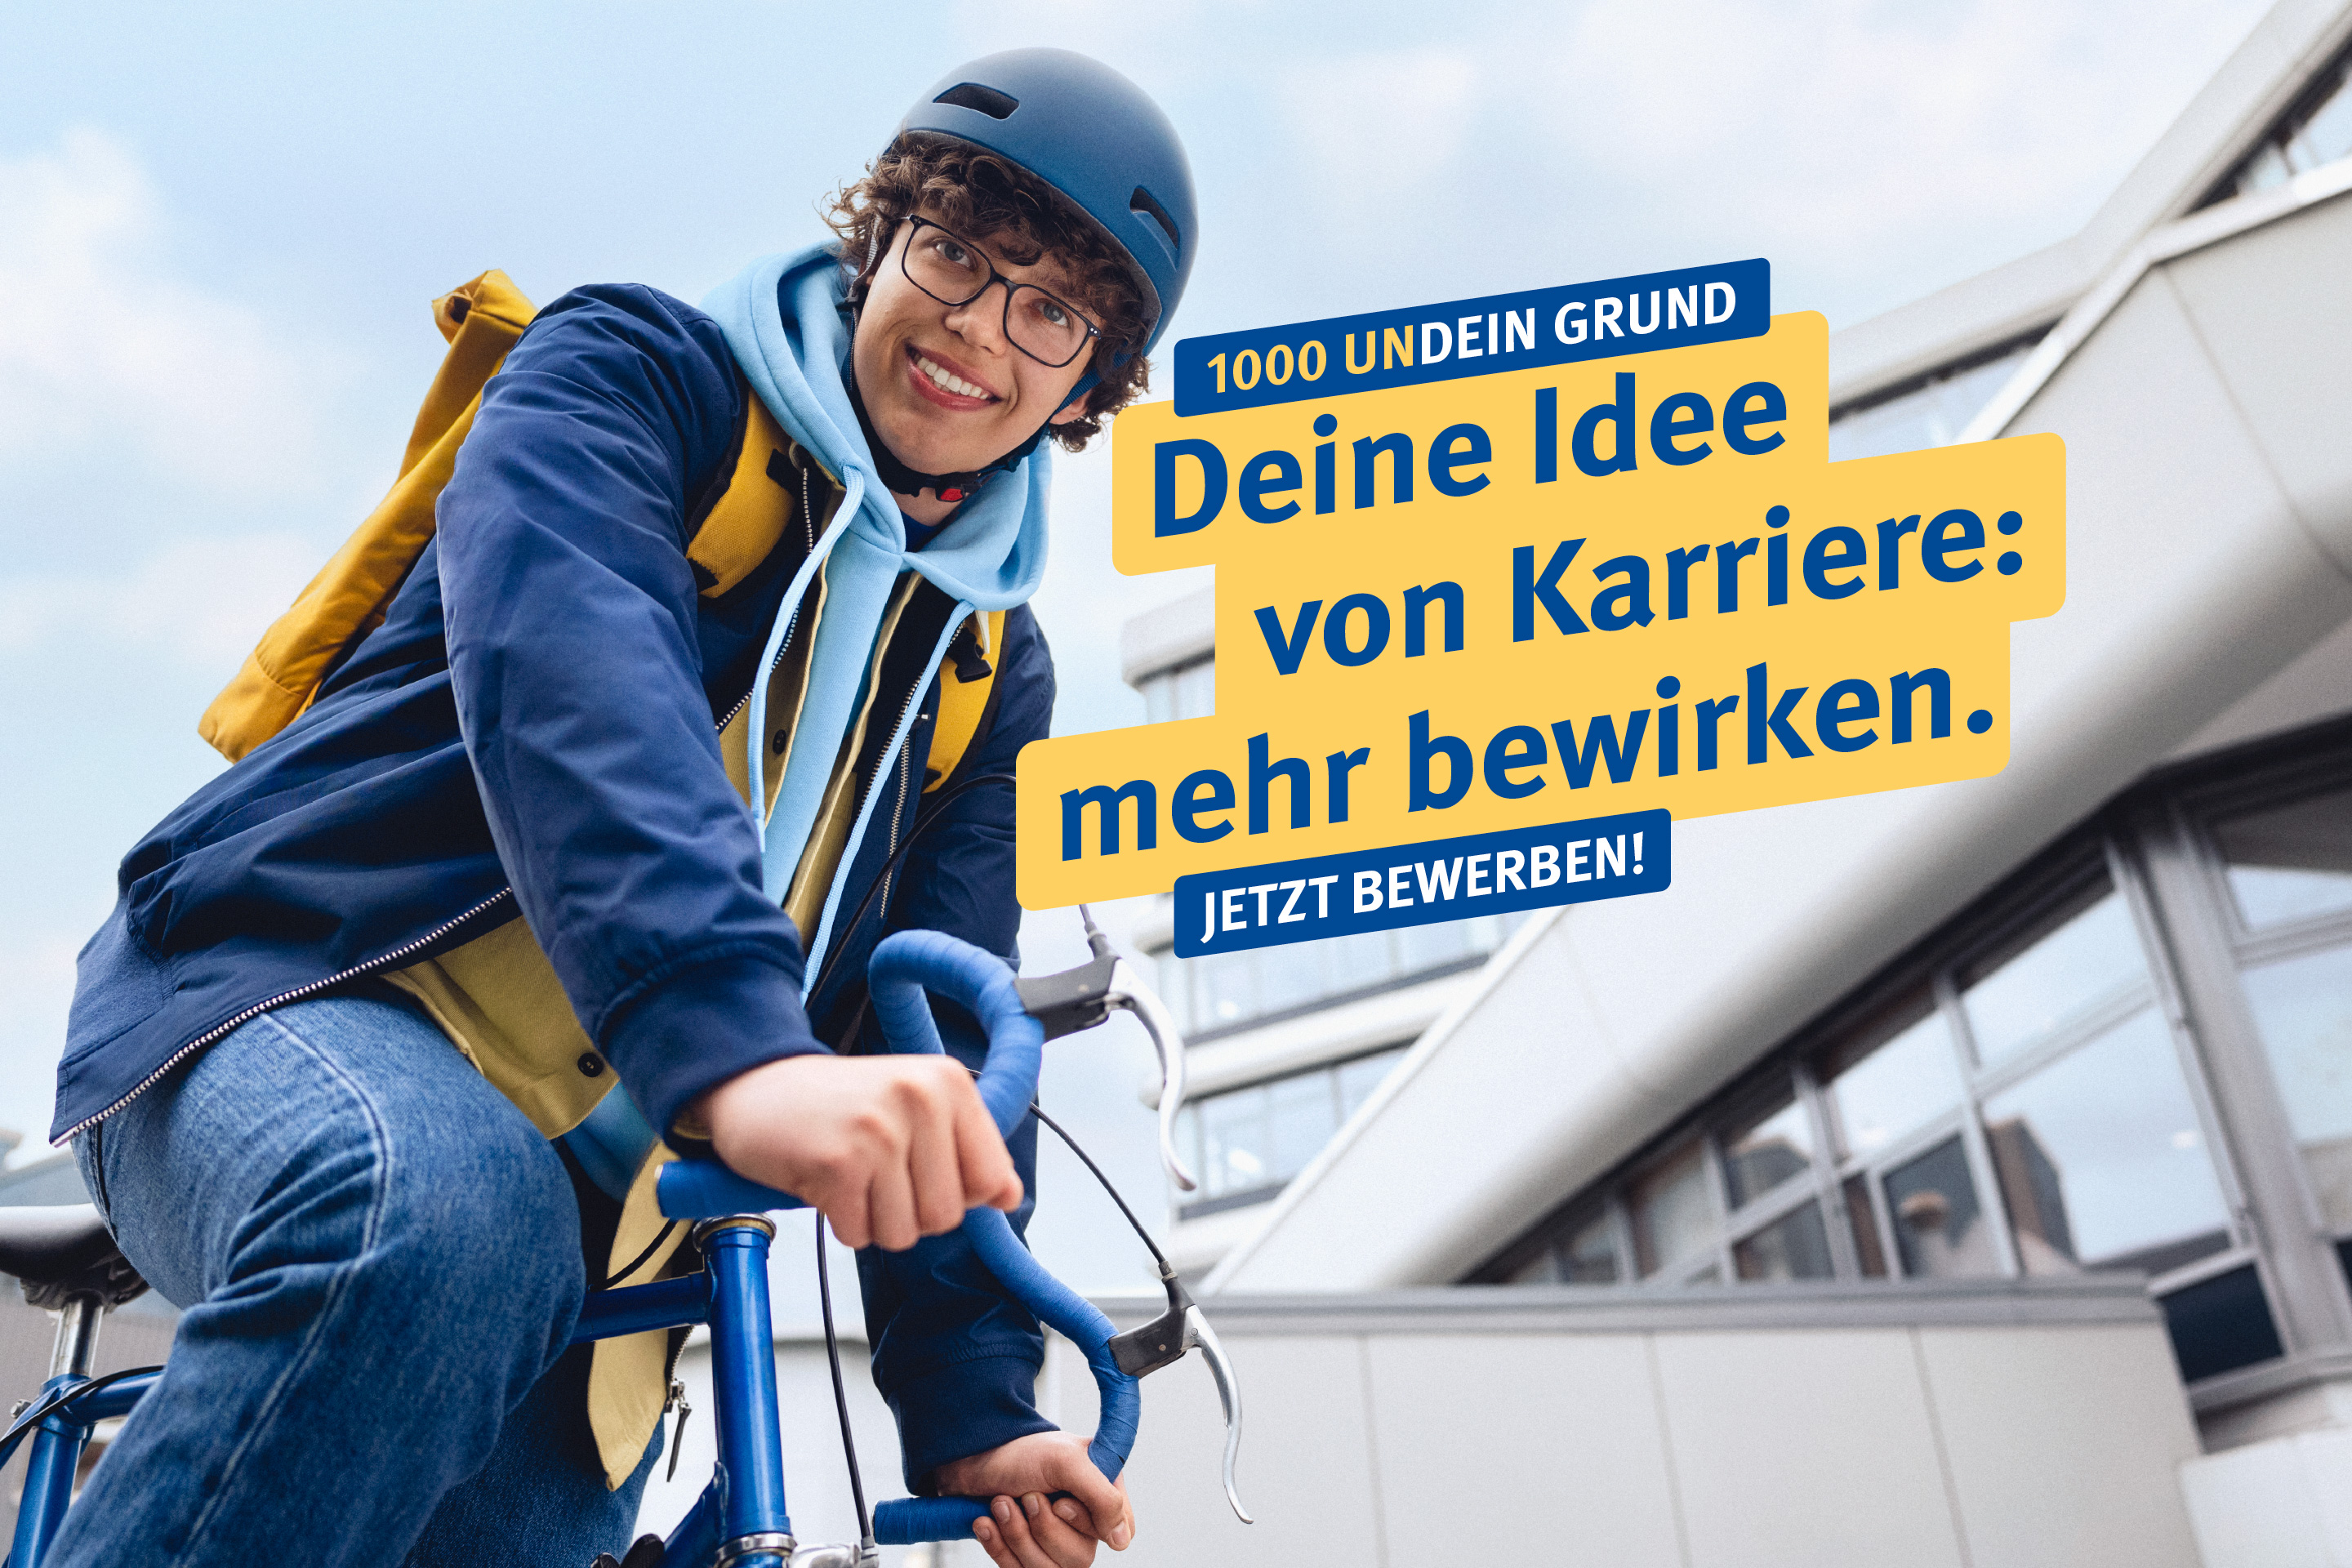 Ein junger Mensch sitzt lächelnd auf einem Fahrrad, dazu der Text: "1000 undein Grund – Deine Idee von Karriere: mehr bewirken. Jetzt bewerben!"